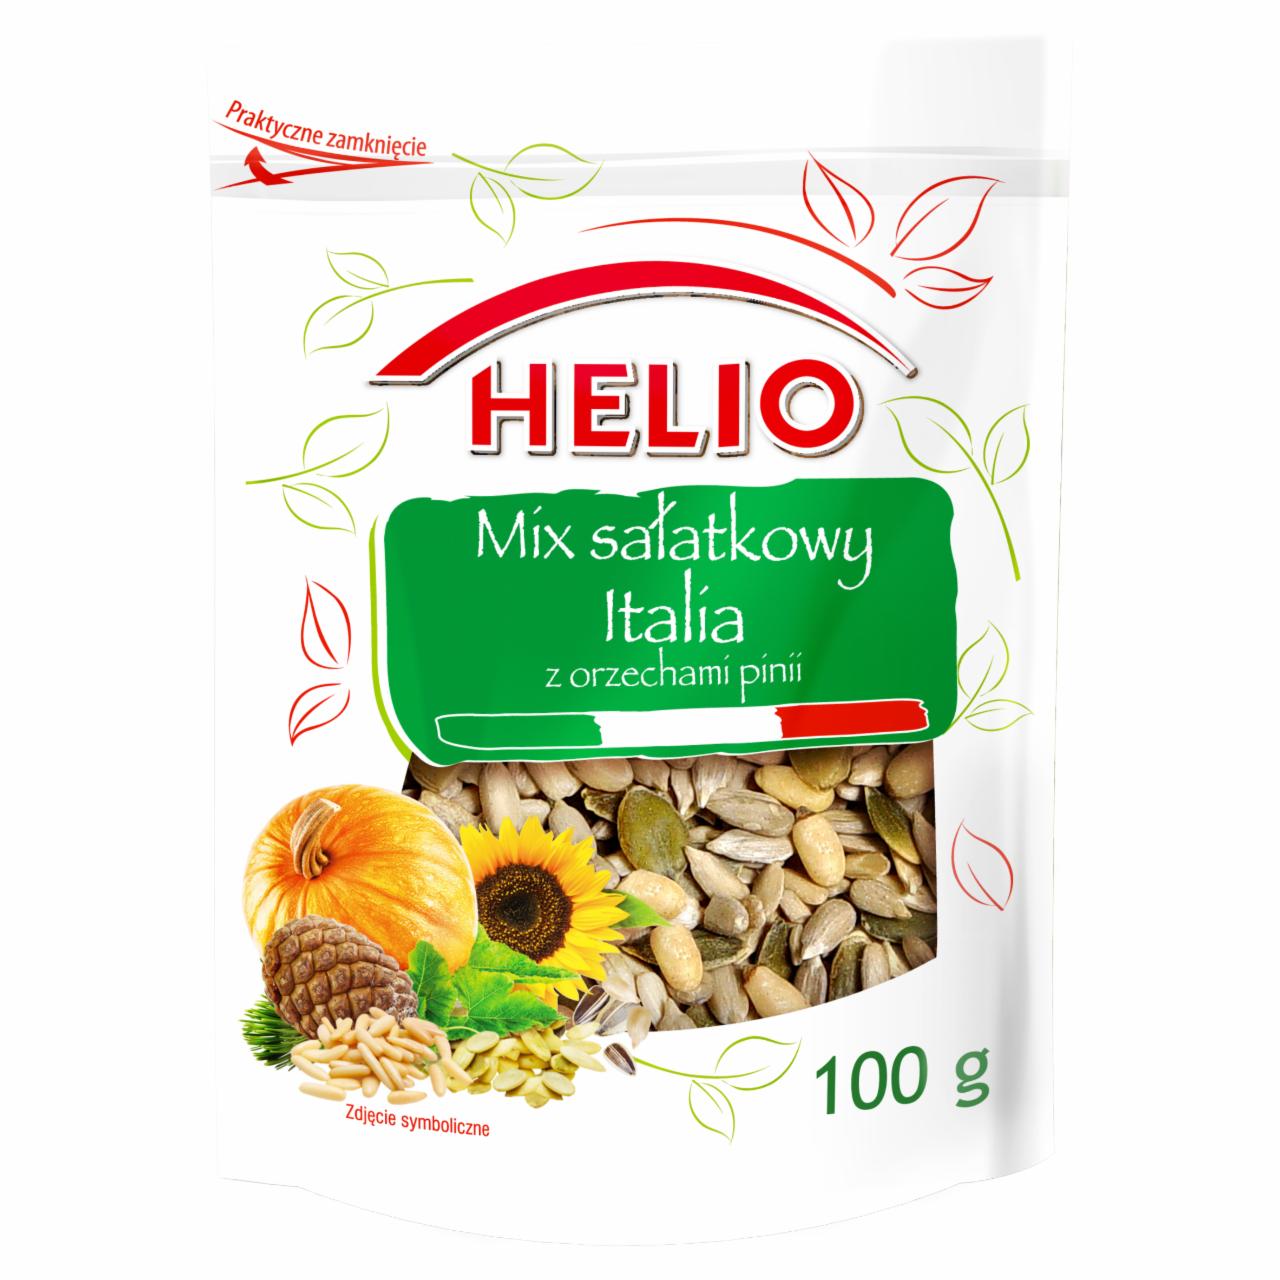 Zdjęcia - Helio Mix sałatkowy Italia z orzechami pinii 100 g